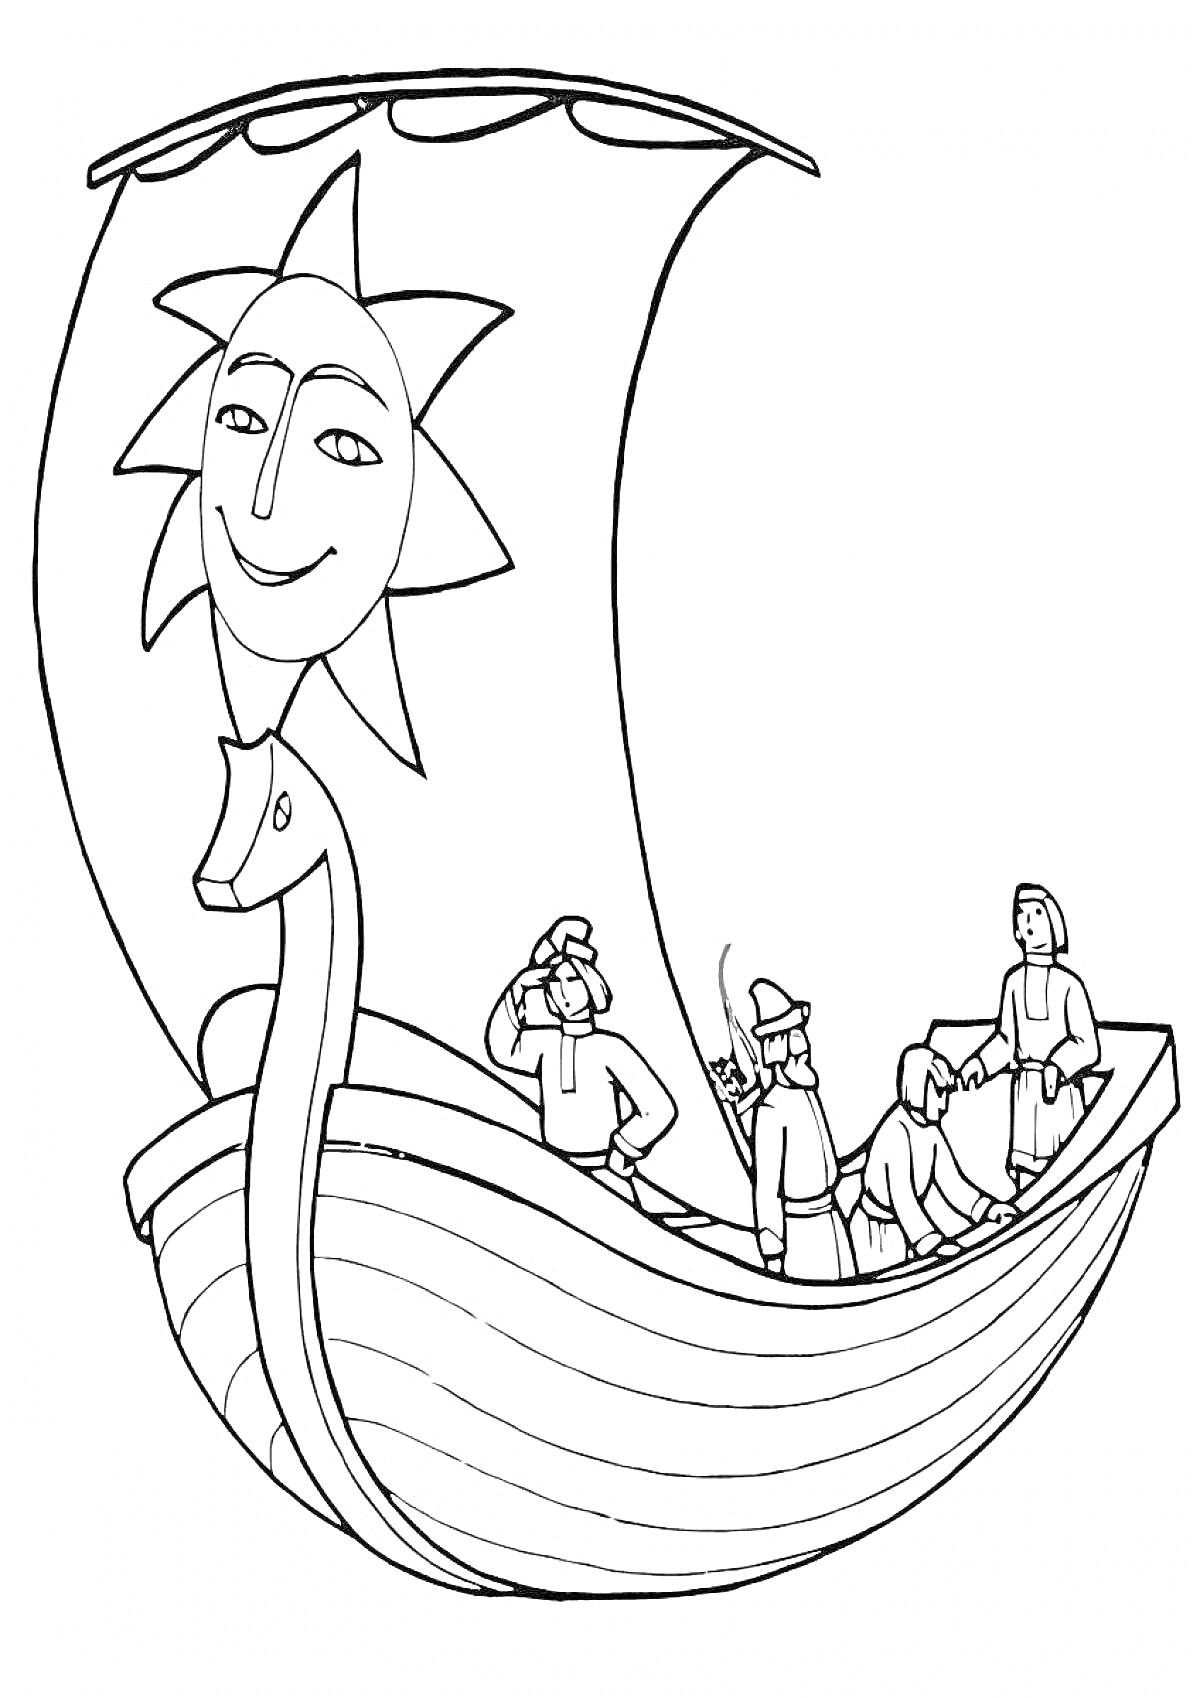 Раскраска Корабль с изображением солнца на парусе и четырьмя людьми на борту